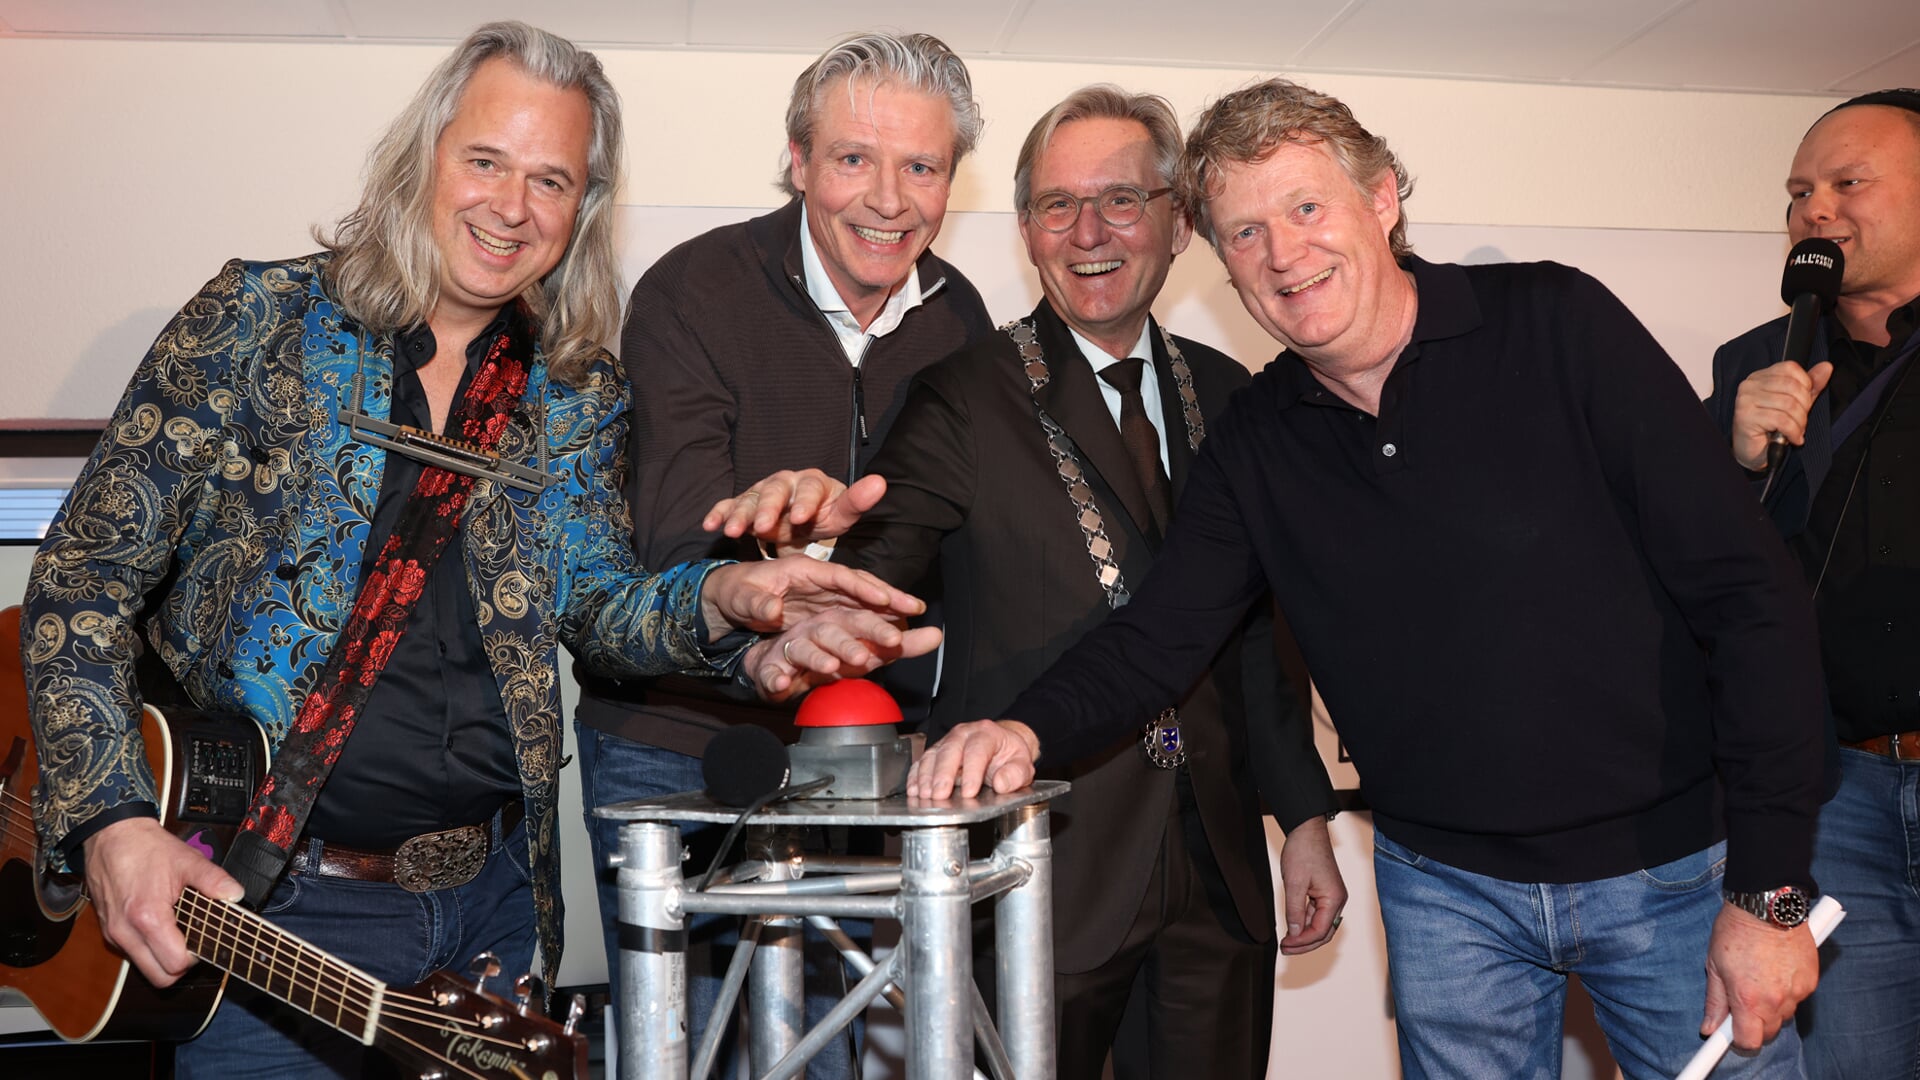 Muzikant Erwin Nyhoff en burgemeester Gerhard van den Top van Hilversum te midden van de initiatiefnemers van ALLsportsradio Jaco Bal en Lars Schotanus.